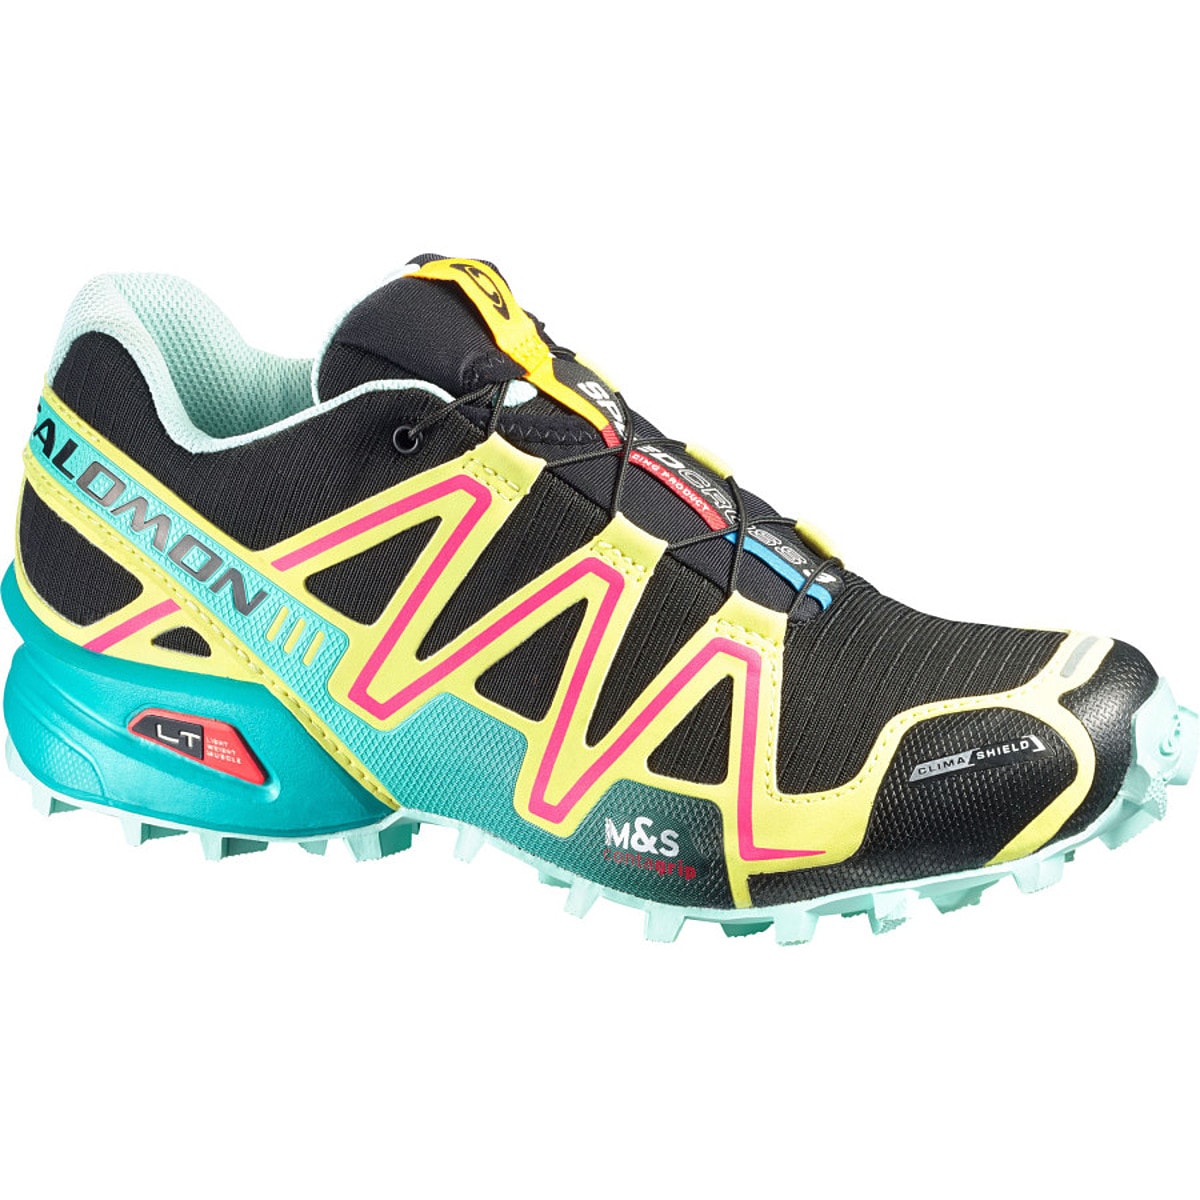 Salomon Speedcross 3 Climashield Trail Running Shoe - Women's - Footwear